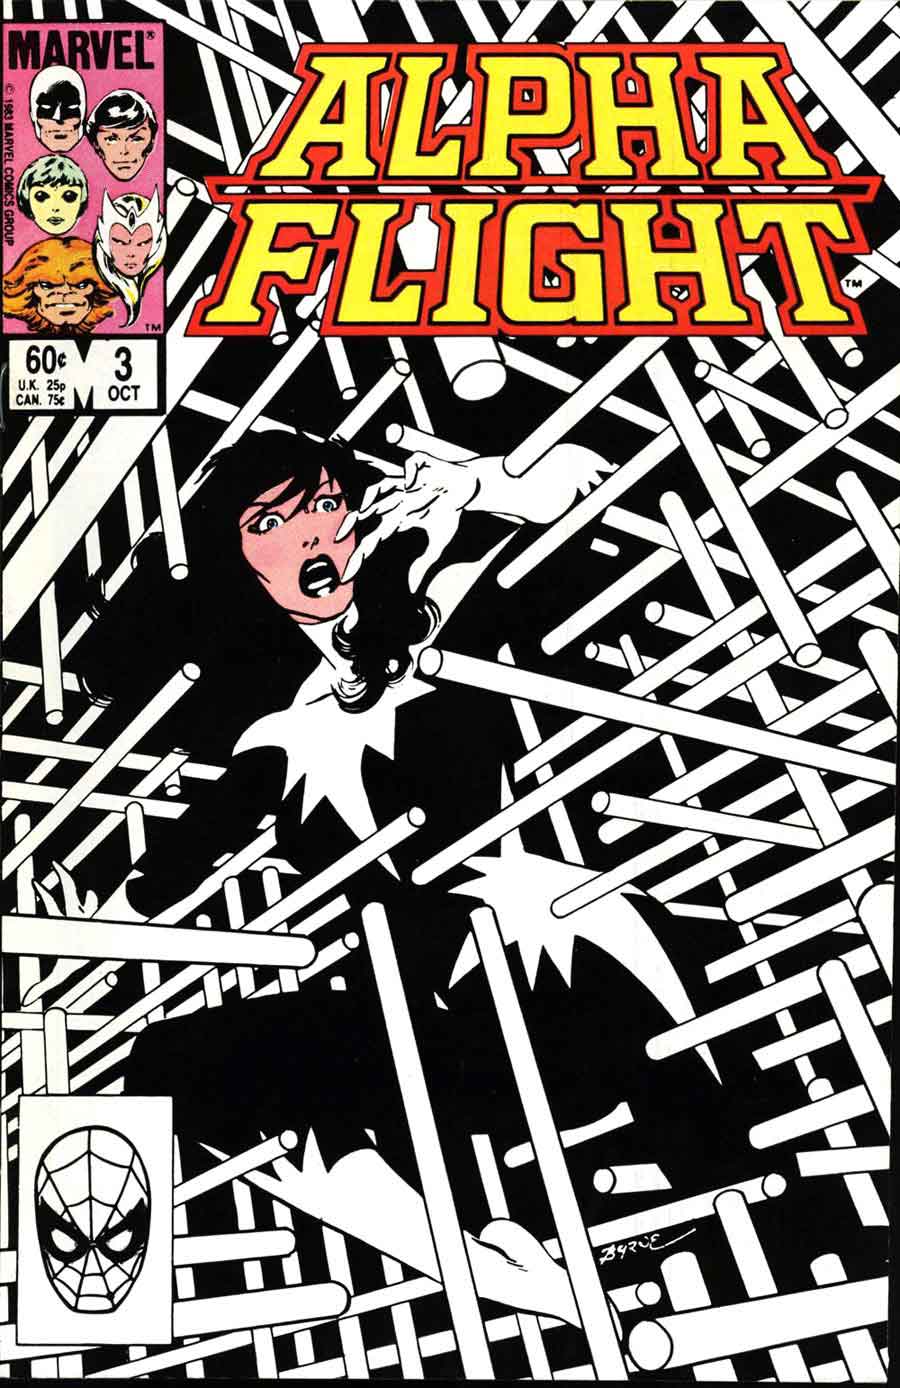 Alpha Flight v1 #3 marvel comic book cover art by John Byrne